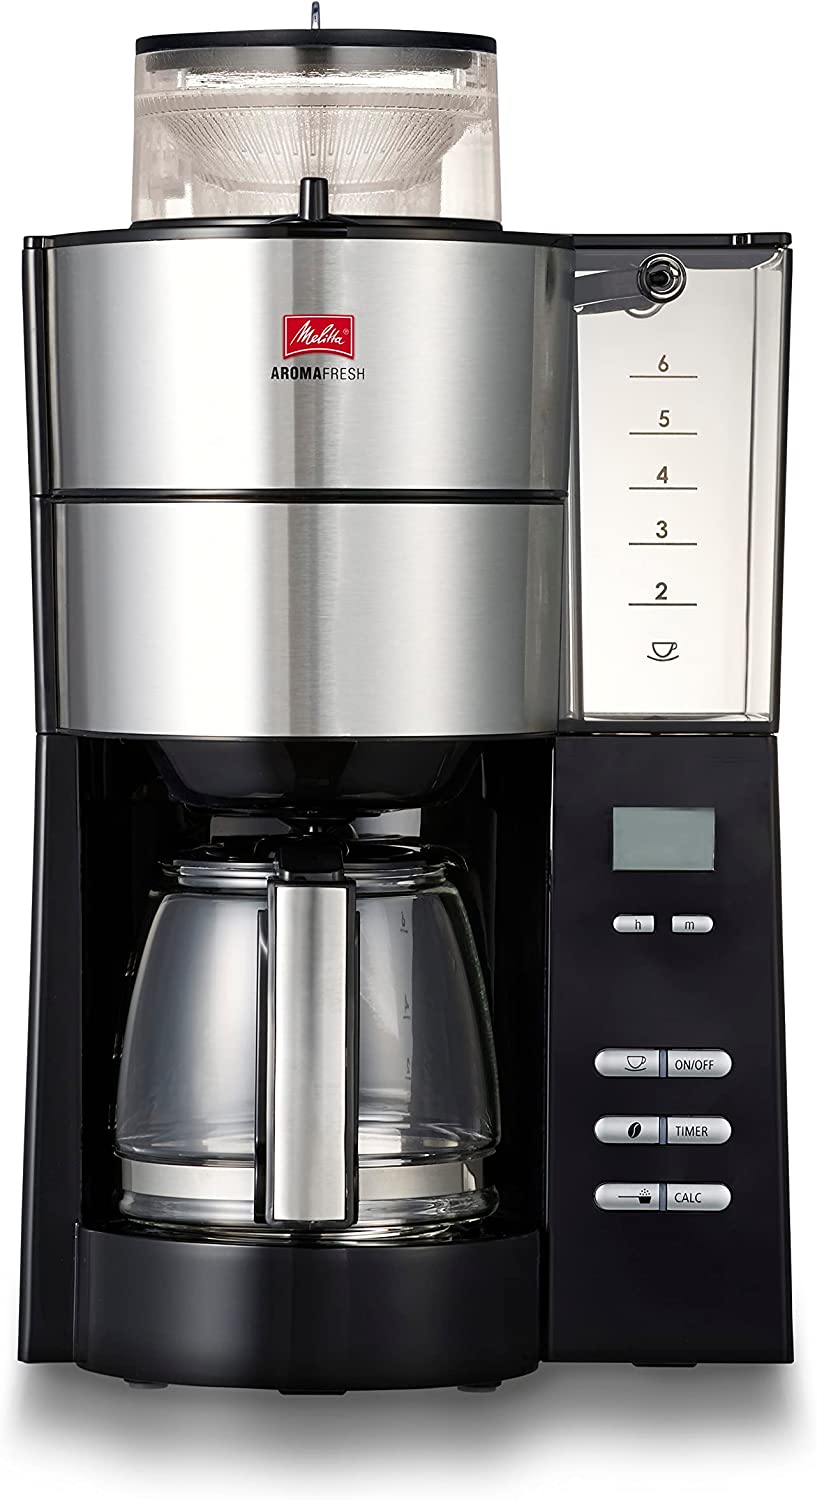 日本代購 空運 Melitta AFG622-1B 全自動 咖啡機 滴漏式 美式咖啡機 磨豆 6杯份 玻璃壺 保溫